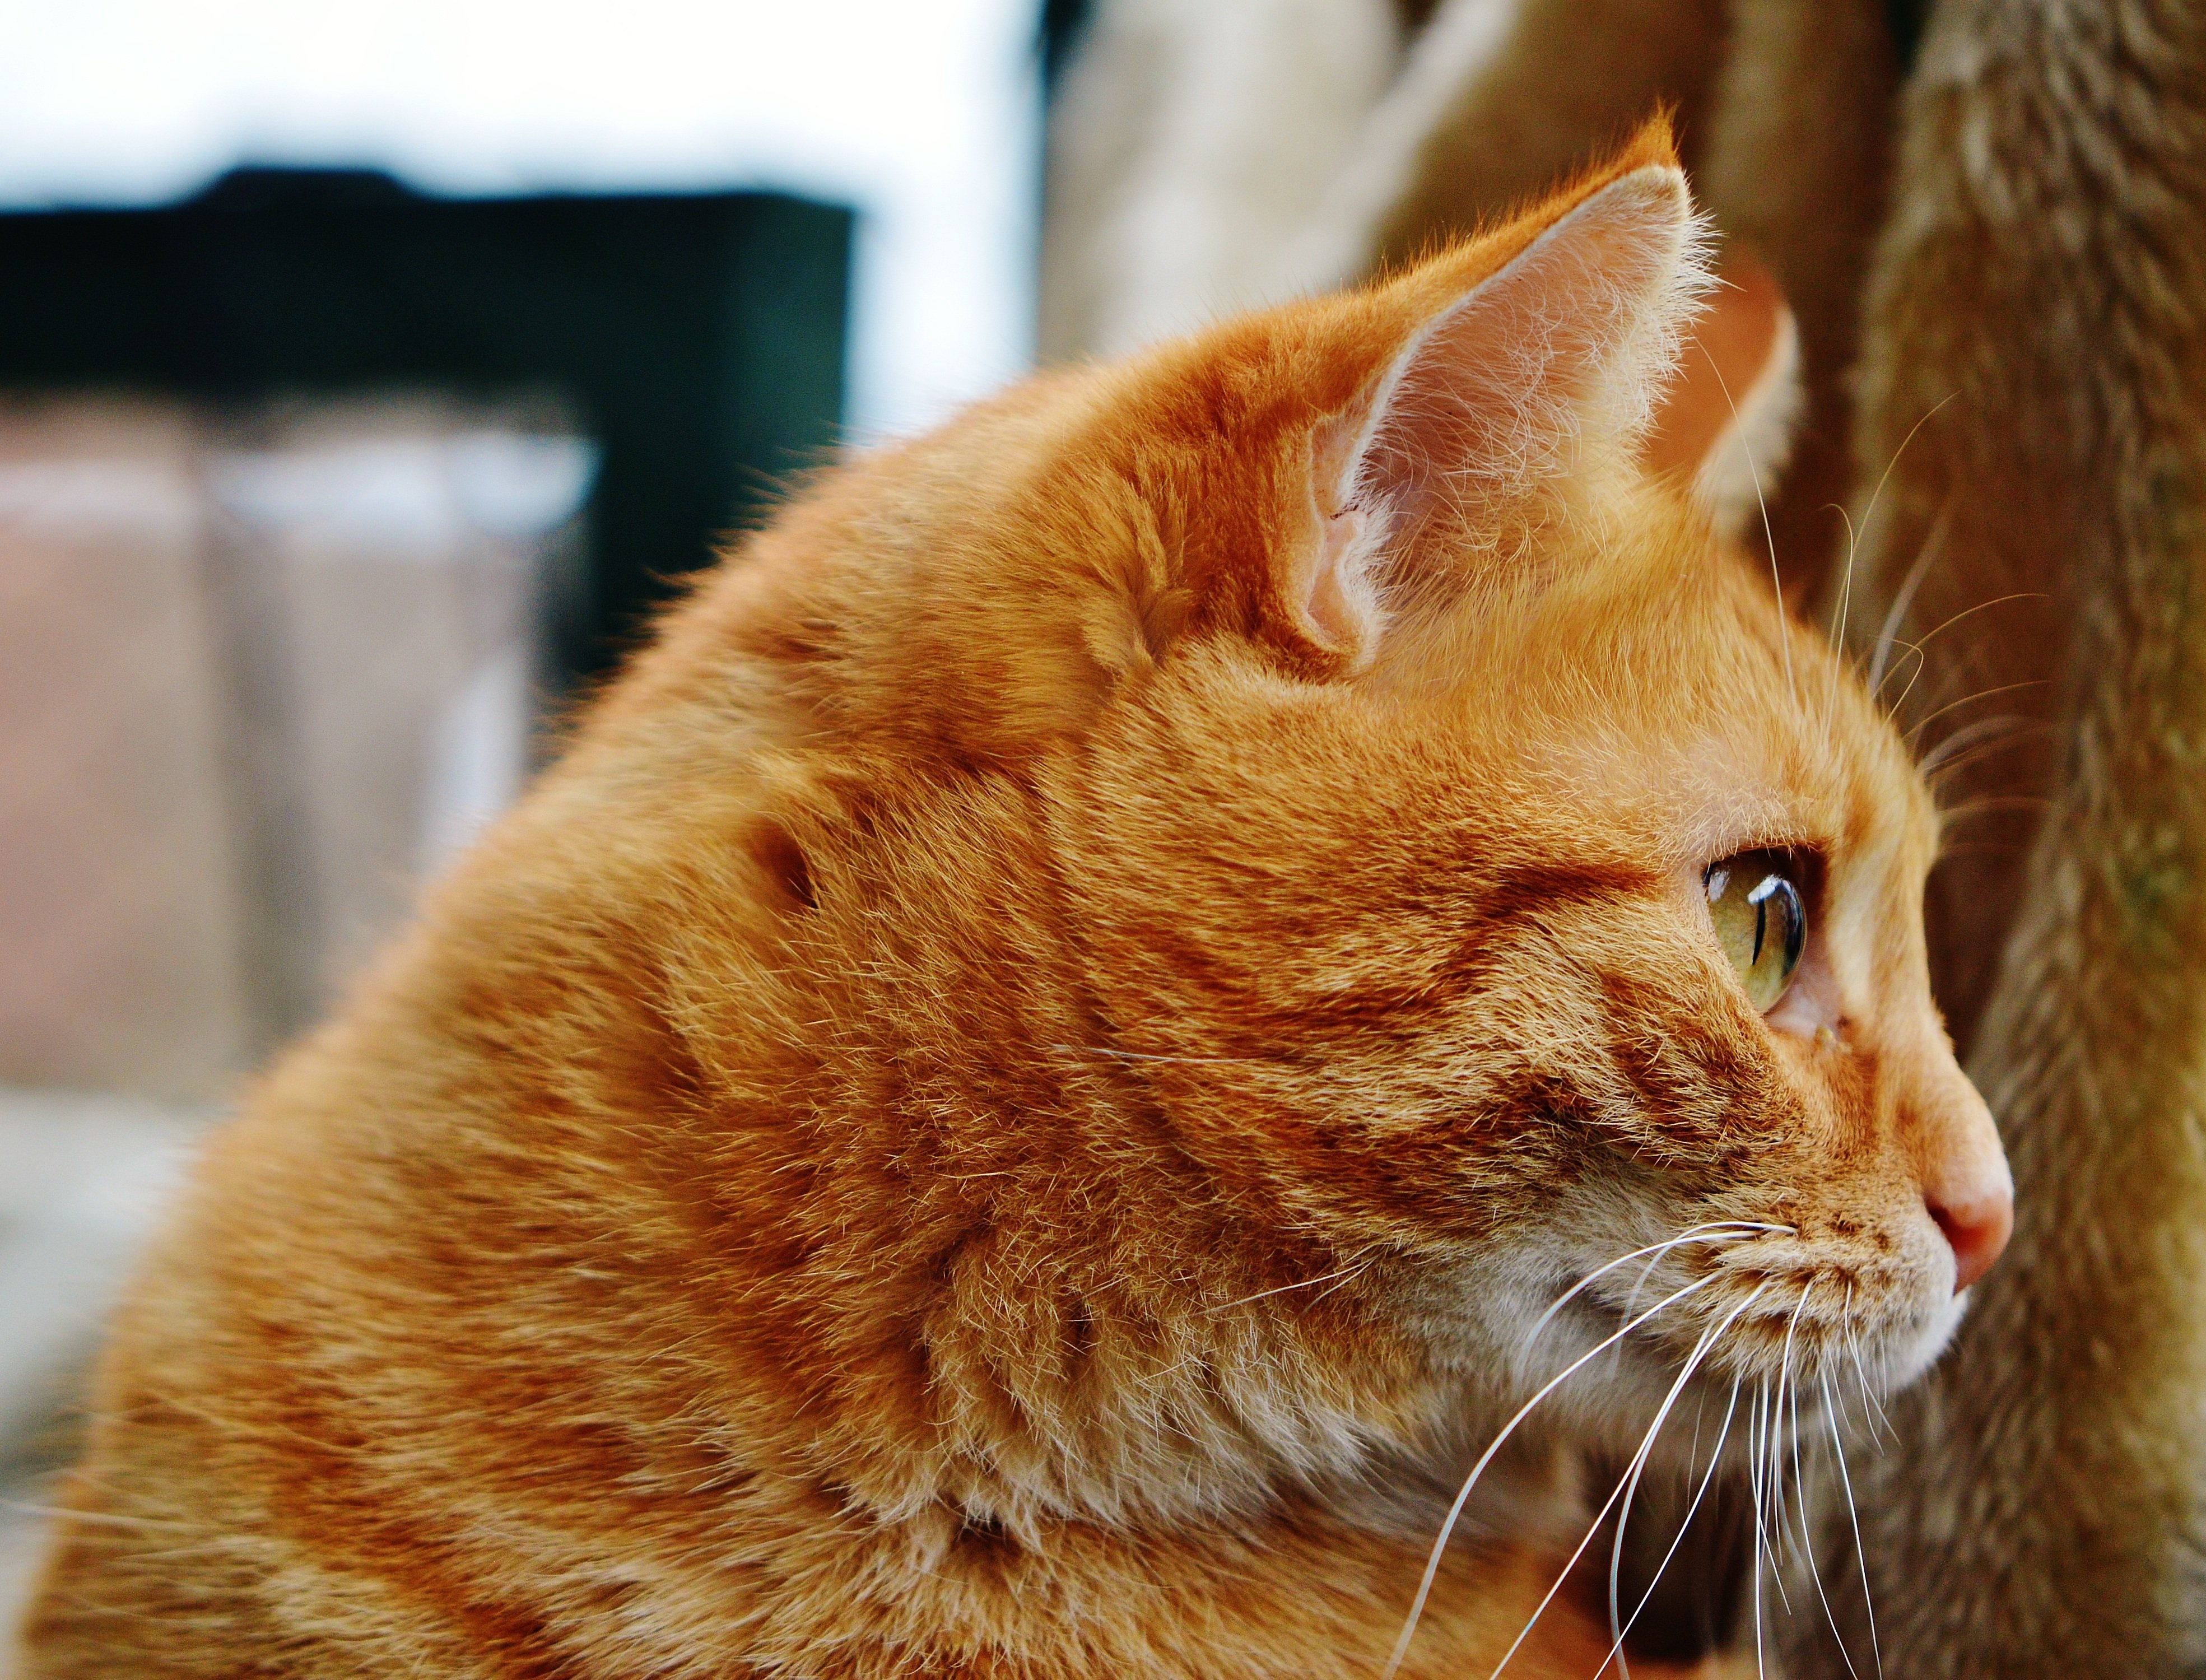 Рыжая полосатая кошка. Европейская короткошерстная кошка рыжая. Европейский короткошерстный кот рыжий. Европейская короткошерстная табби рыжий. Тигровый макрелевый табби рыжий.